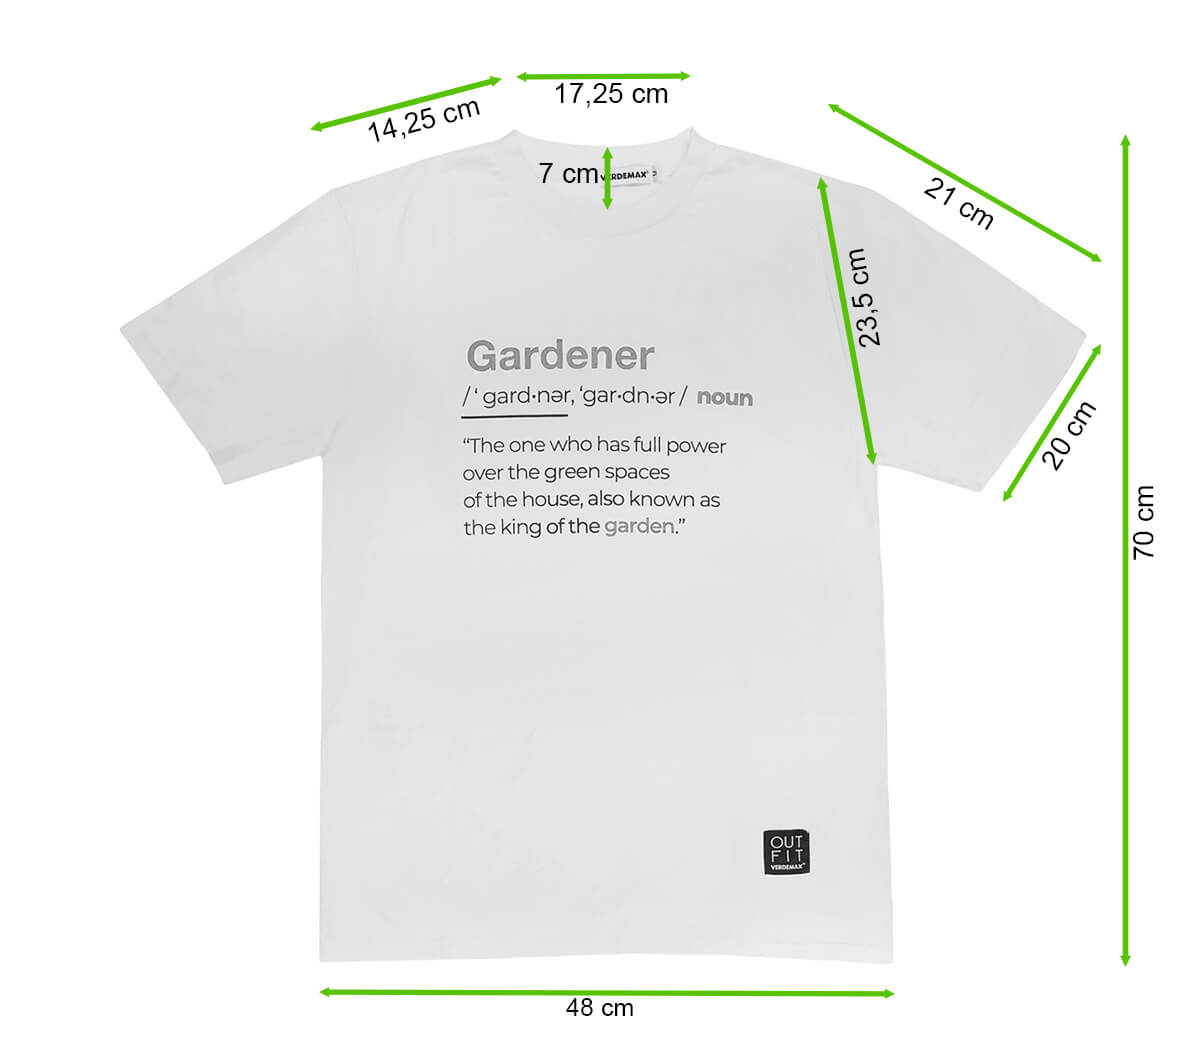 Biała koszulka T-shirt GARDENER S - Verdemax - rycina z wymiarami